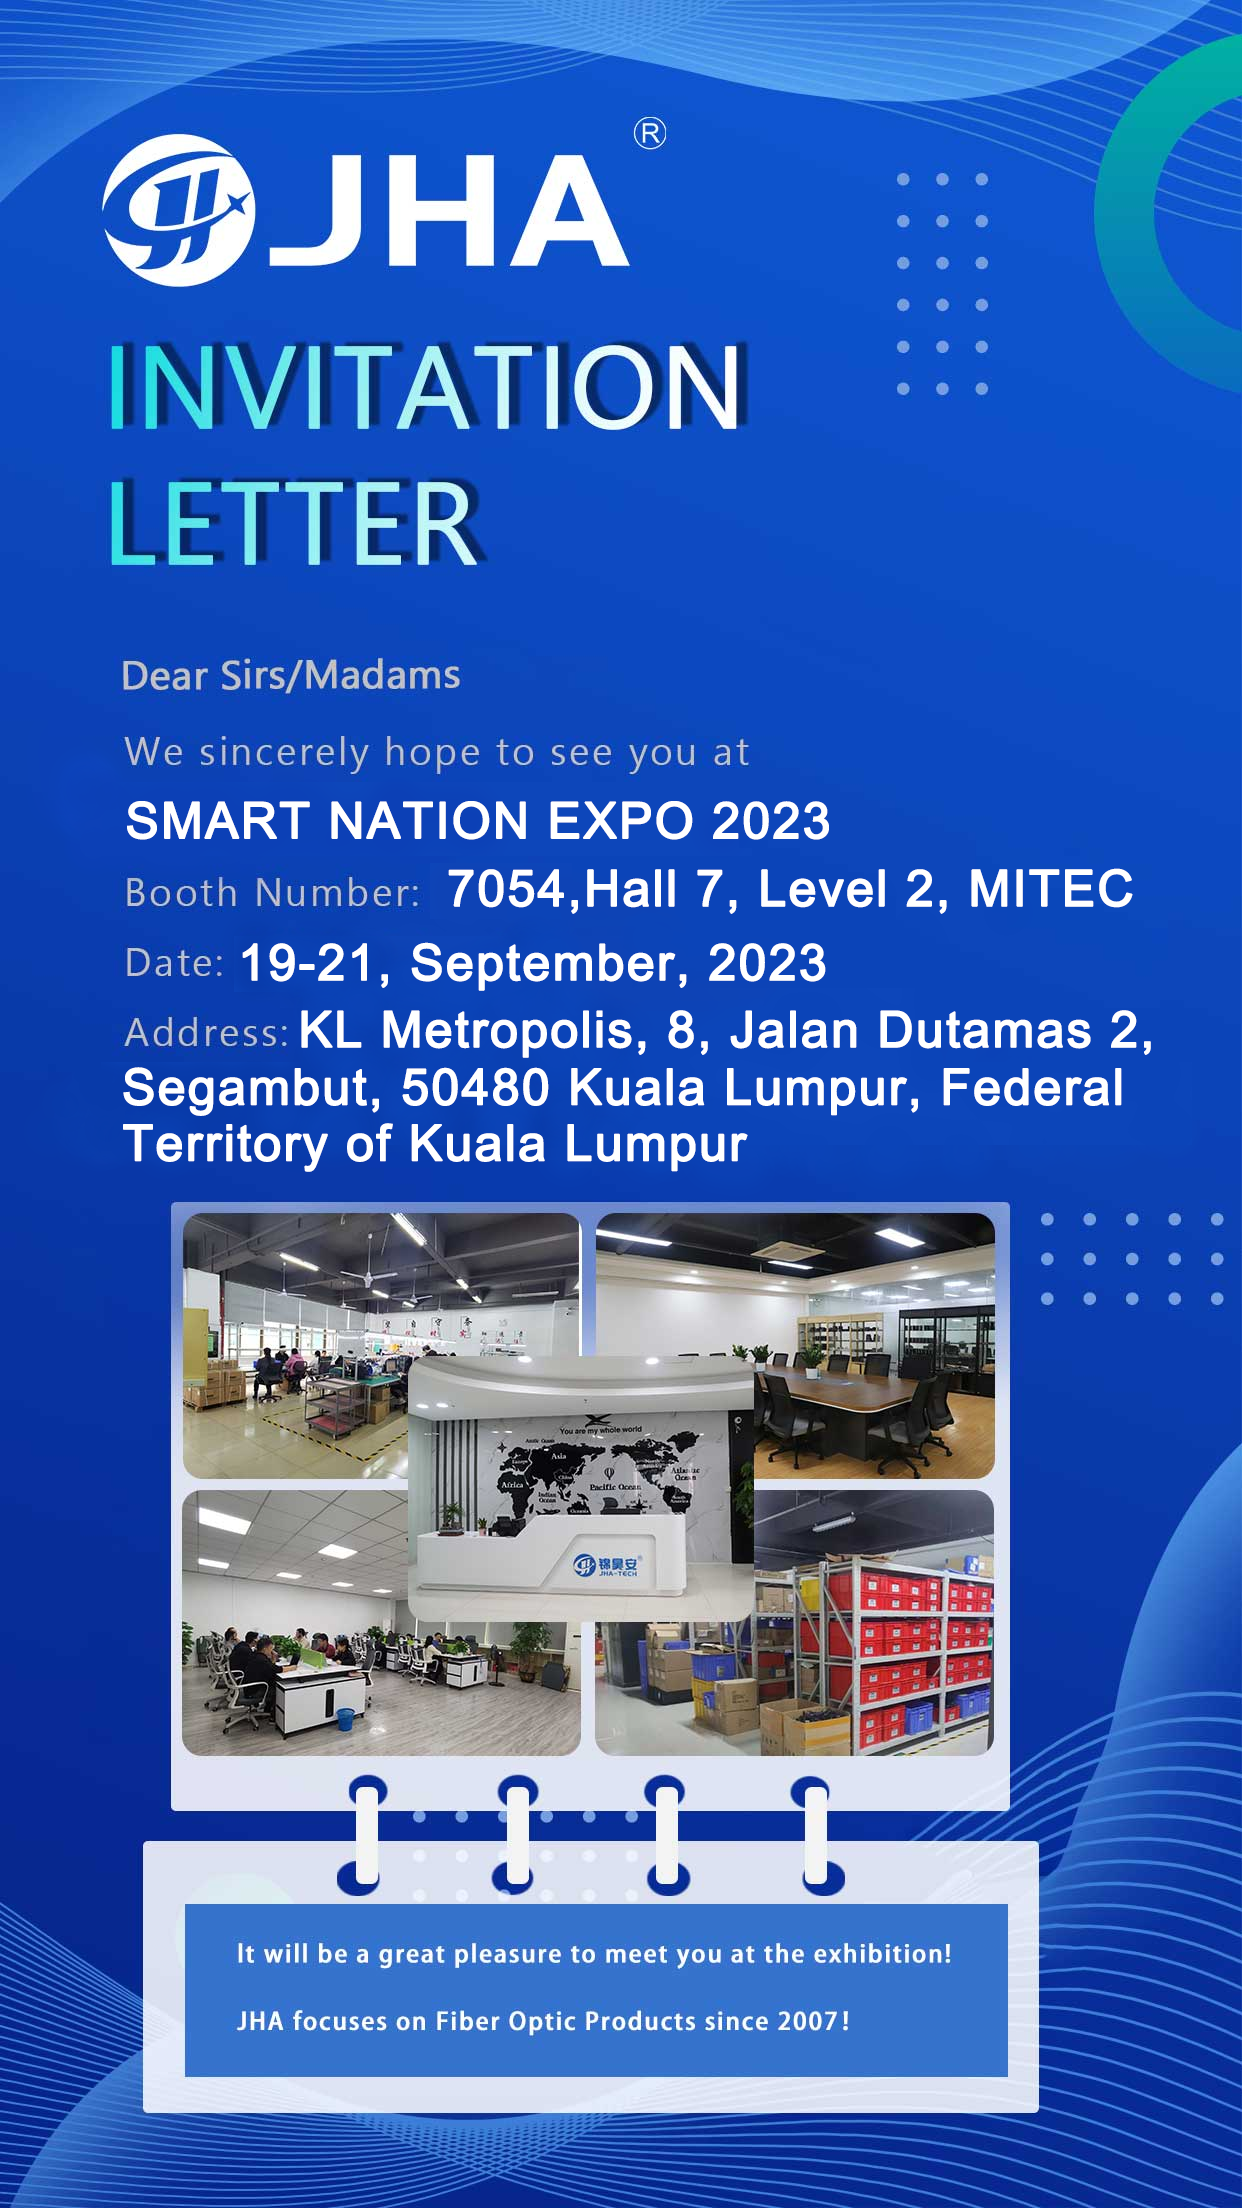 Lad os se dig til SMART NATION EXPO 2023